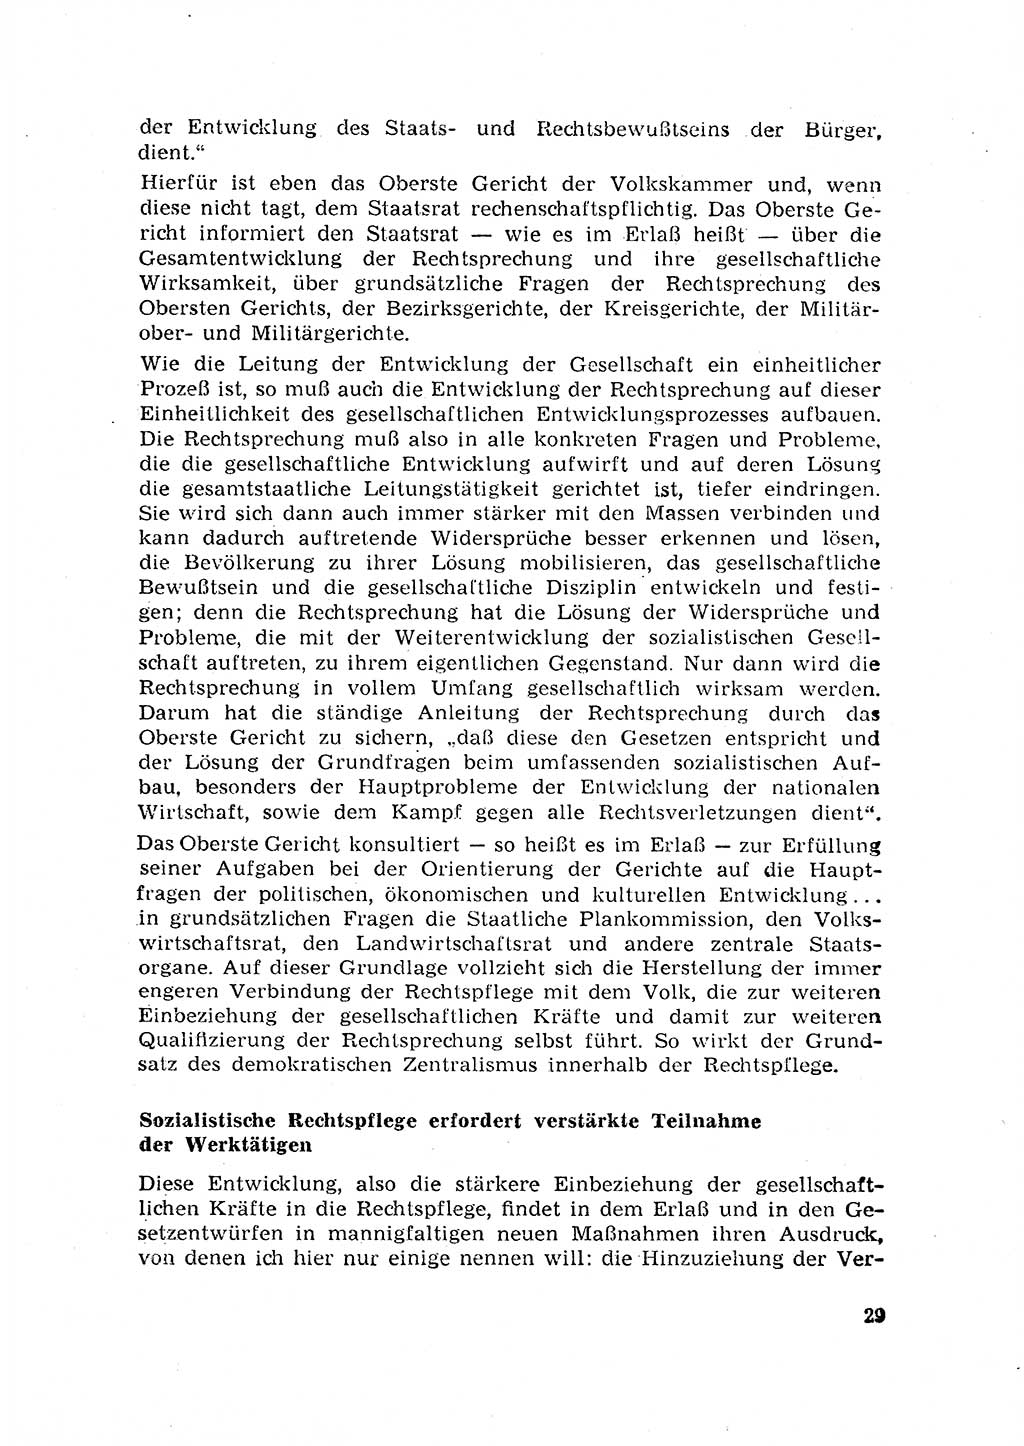 Rechtspflegeerlaß [Deutsche Demokratische Republik (DDR)] 1963, Seite 29 (R.-Pfl.-Erl. DDR 1963, S. 29)